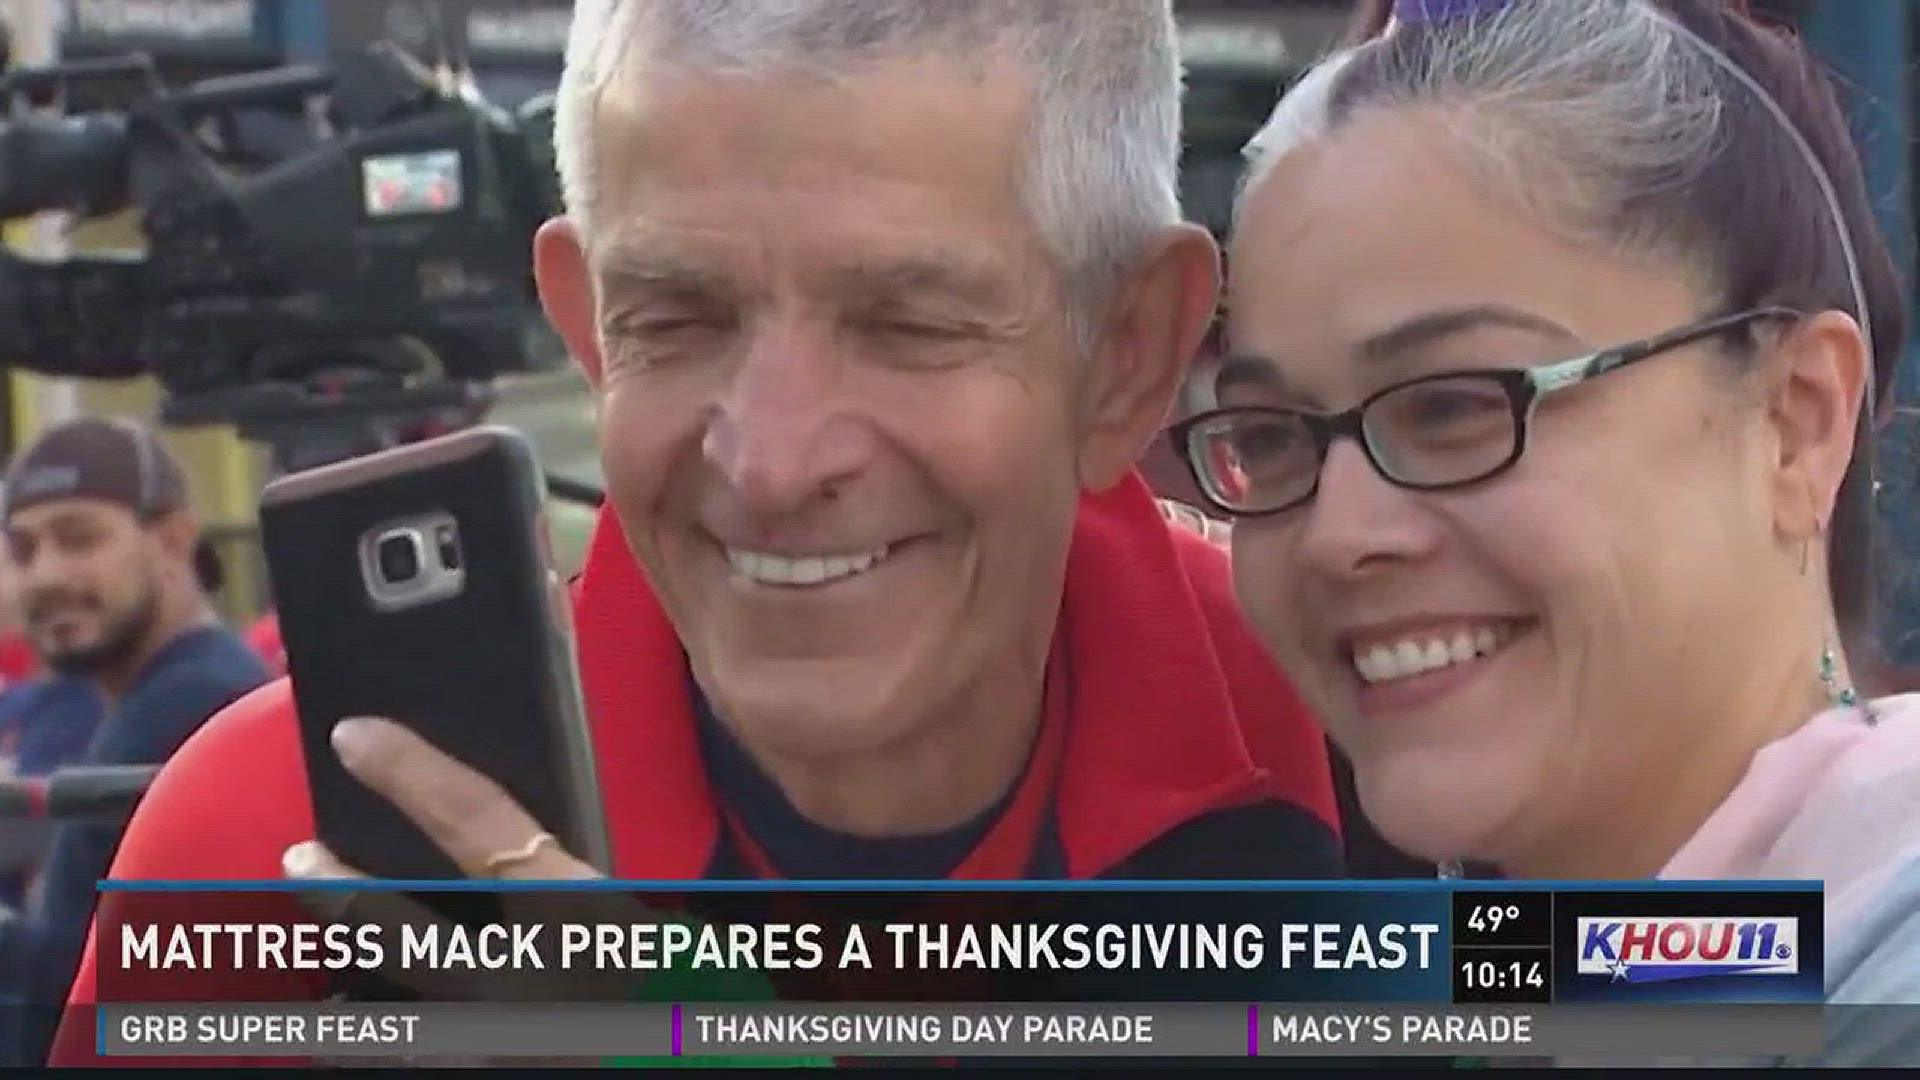 Mattress Mack feeds Thanksgiving meals to thousands